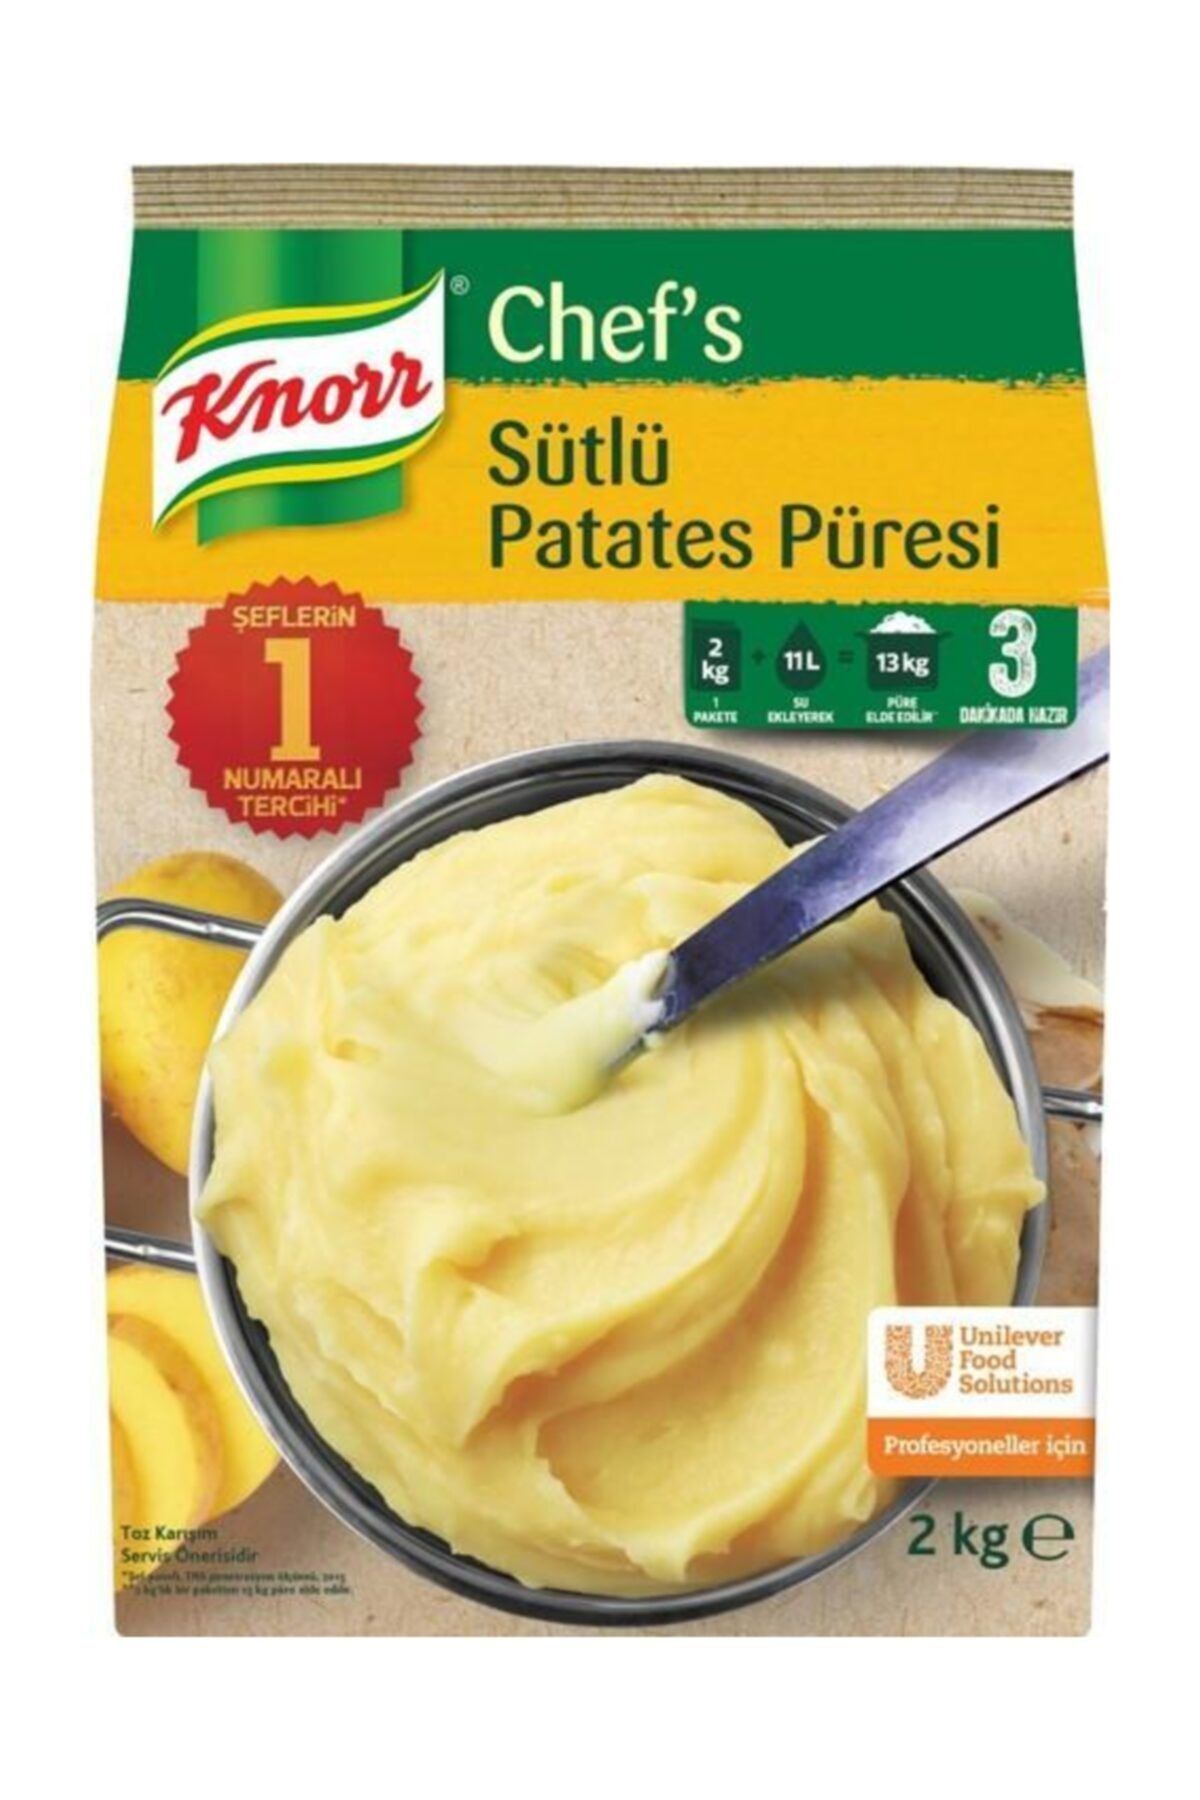 Knorr Sütlü Patates Püresi 4 X 2 kg